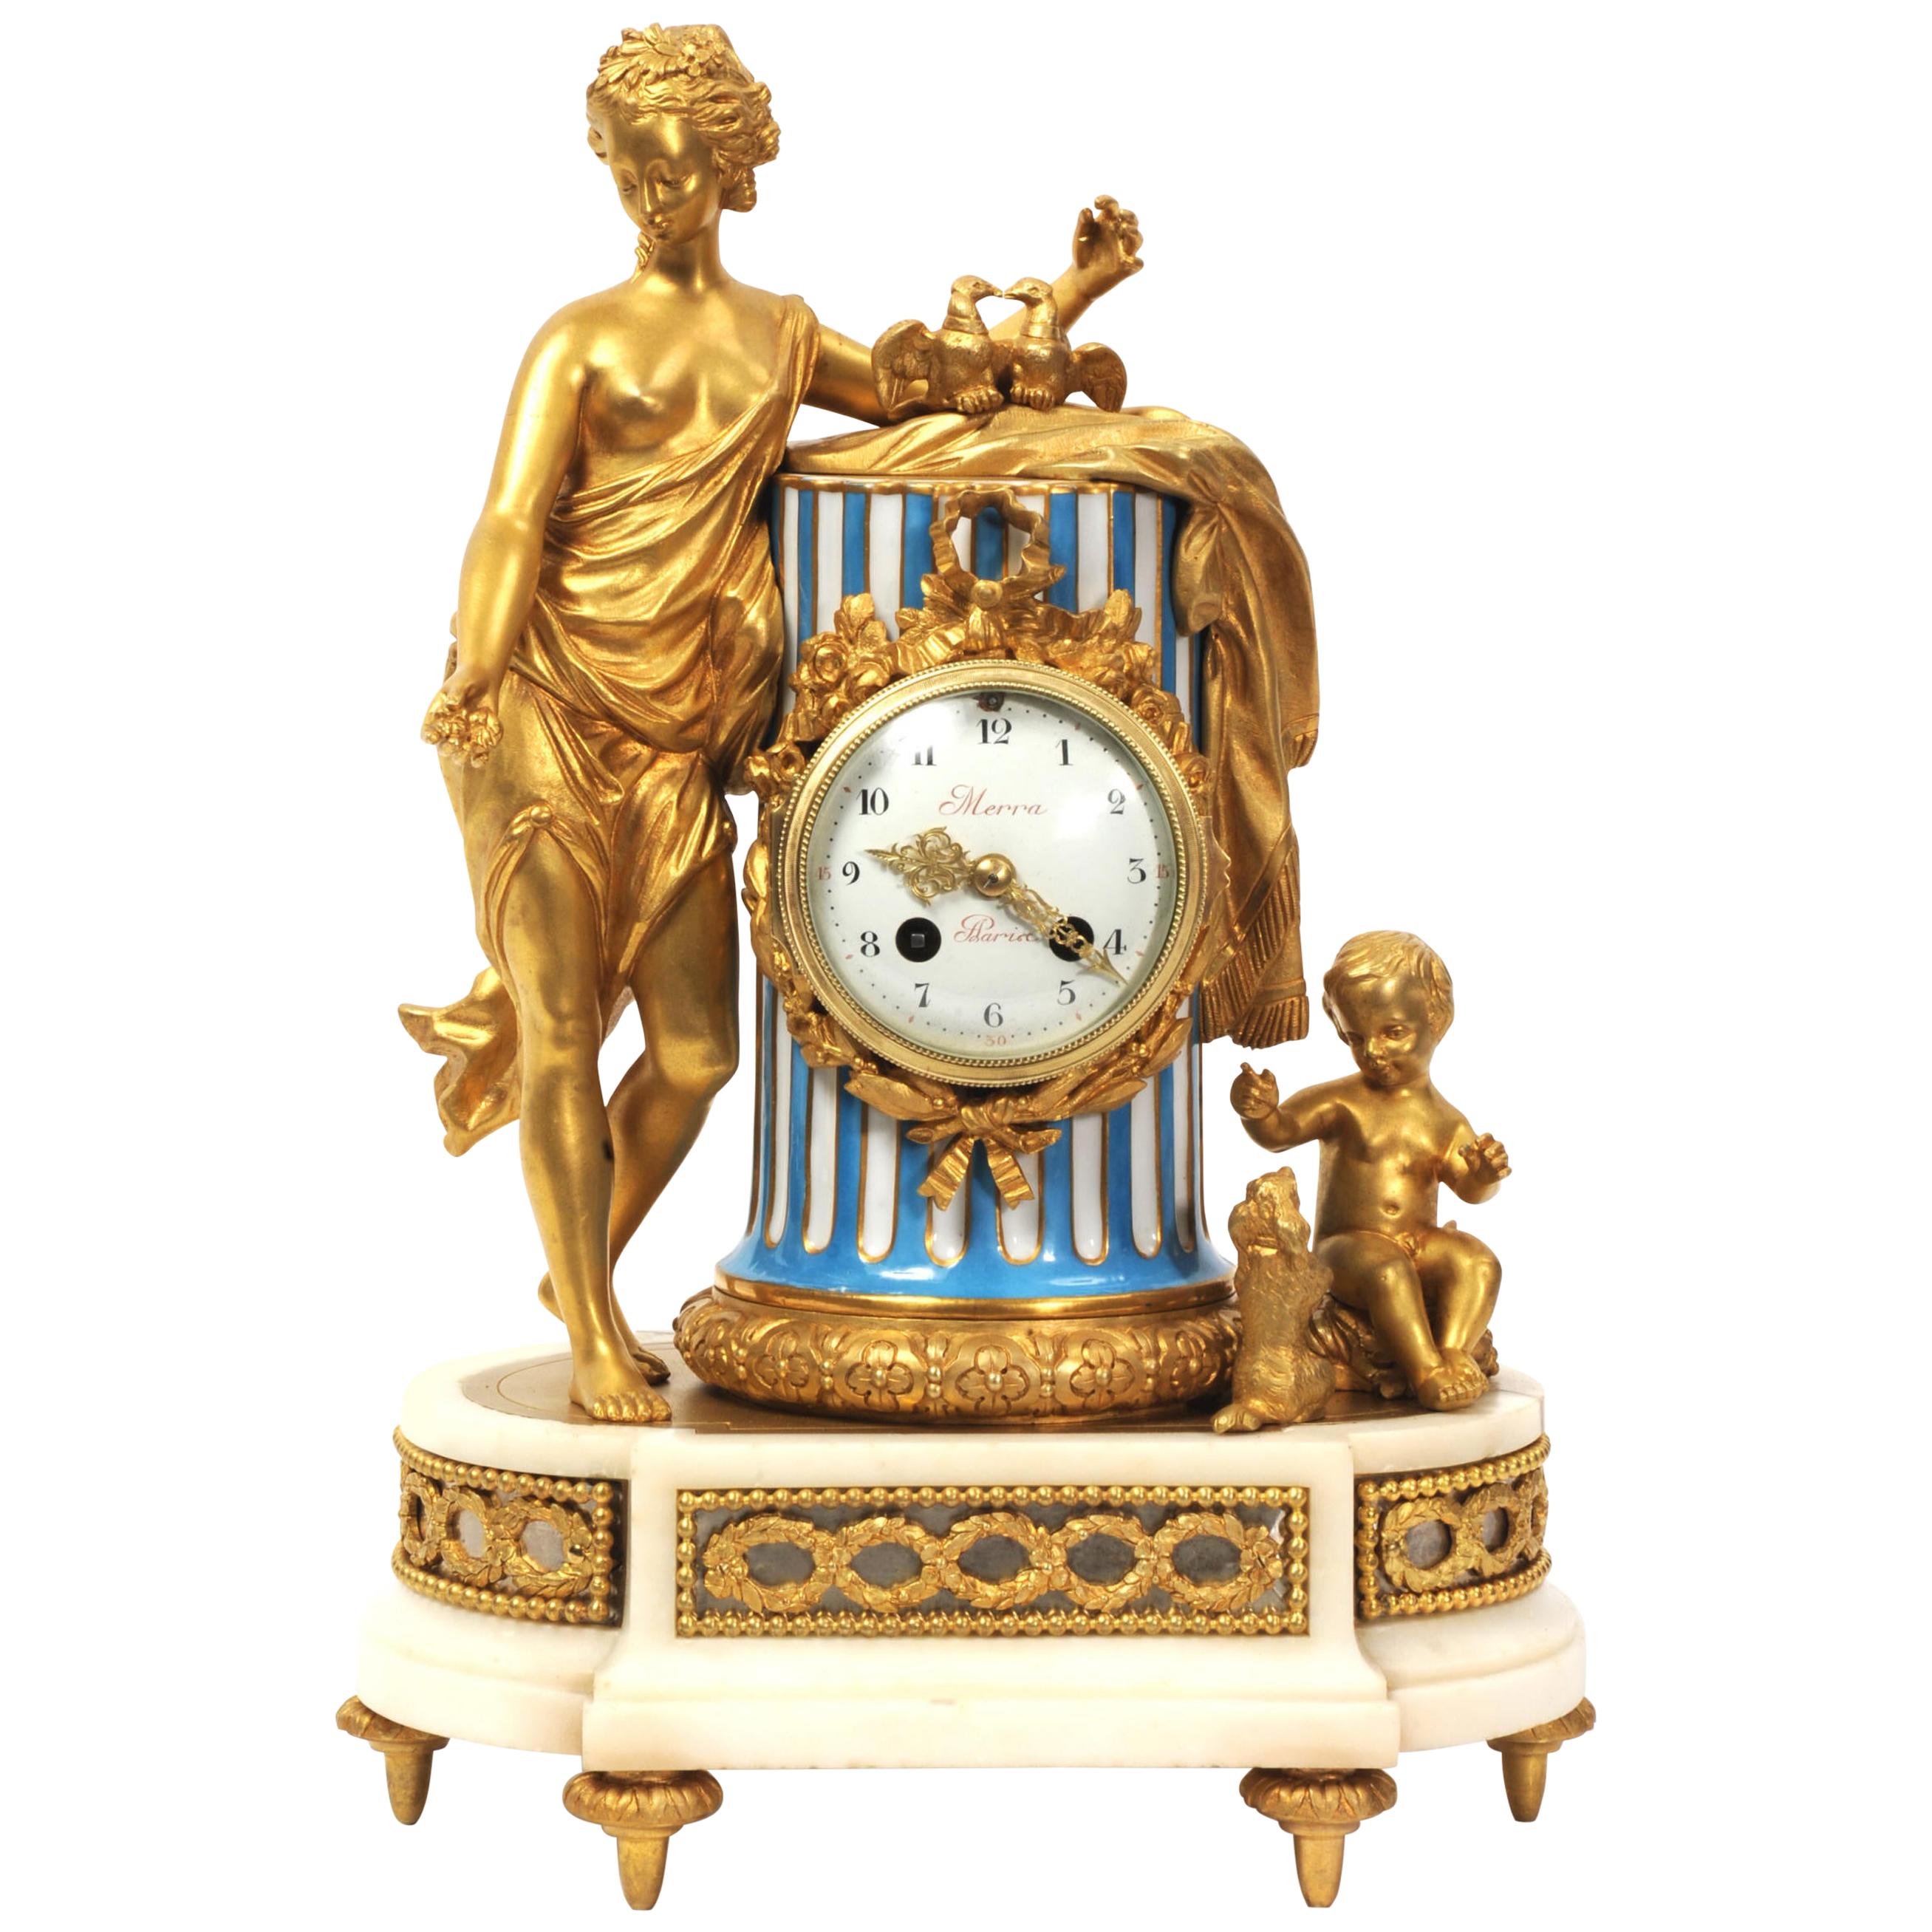 Venus, Putto and a Dog, Antique French Sèvres Porcelain and Ormolu Clock